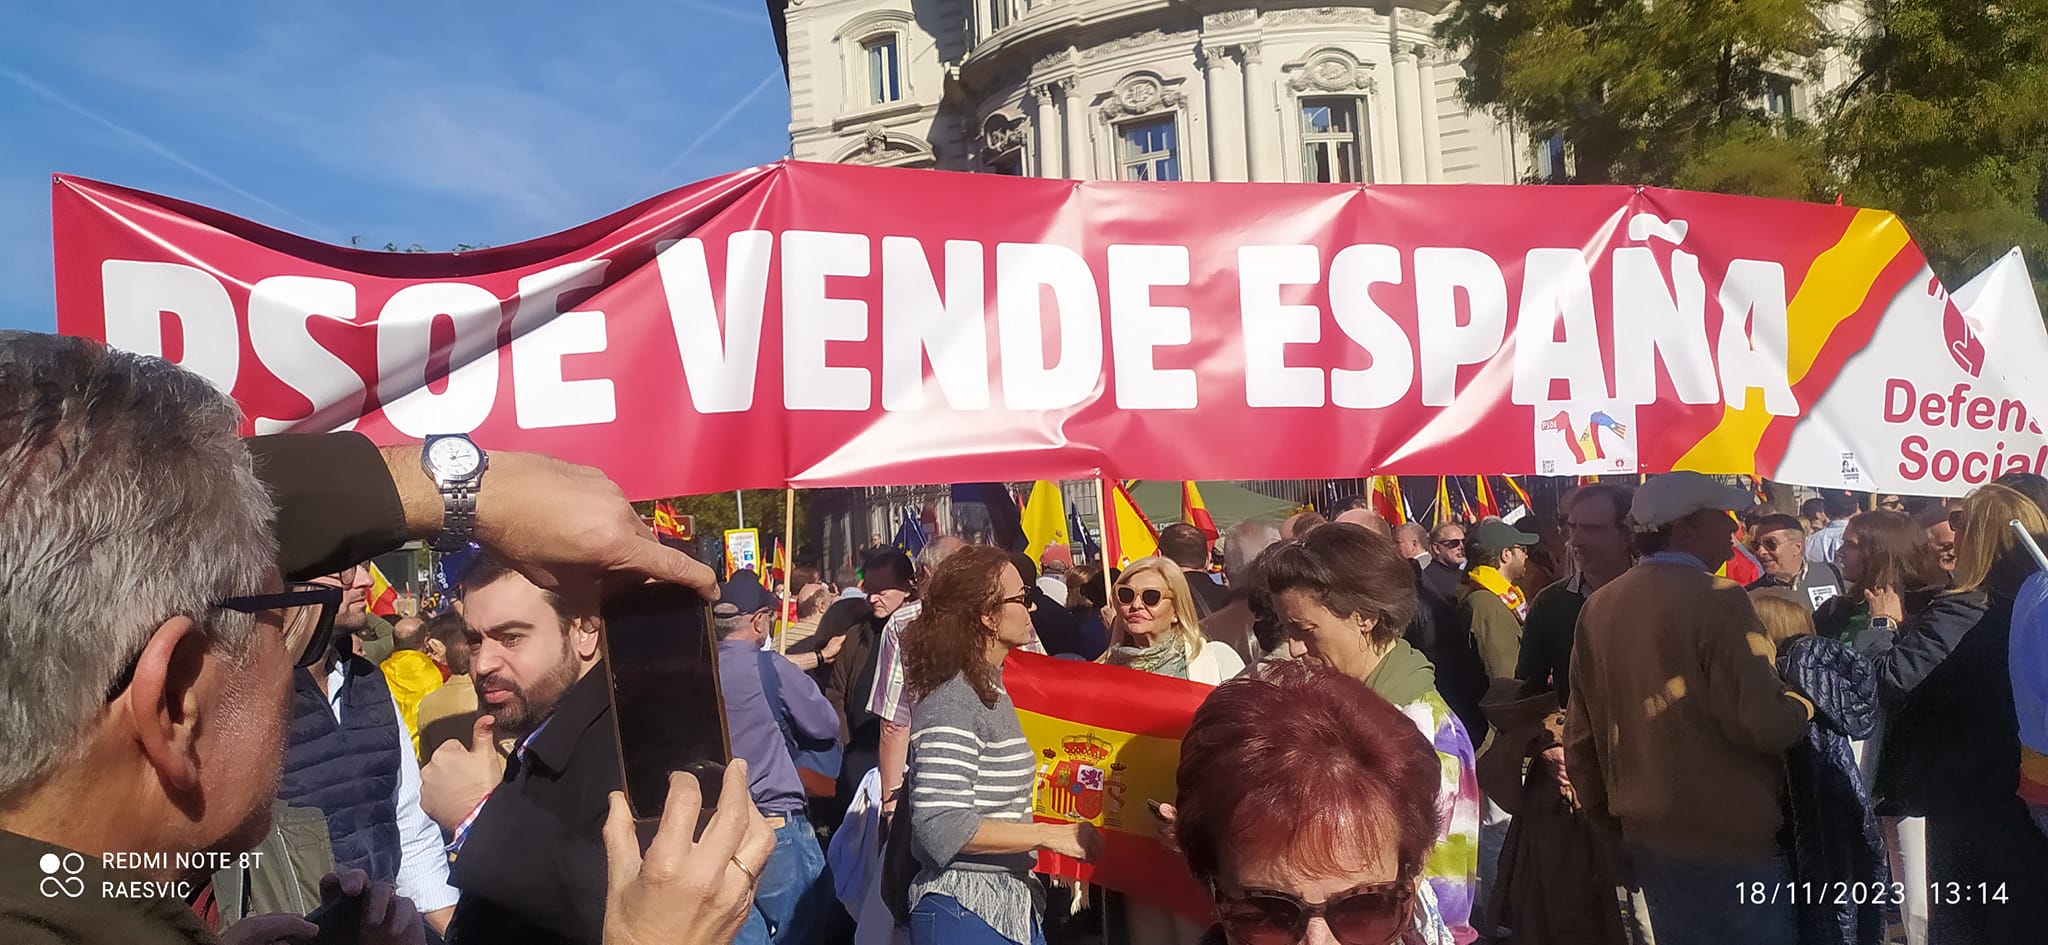 Pancarta PSOE vende España, Defensa Social